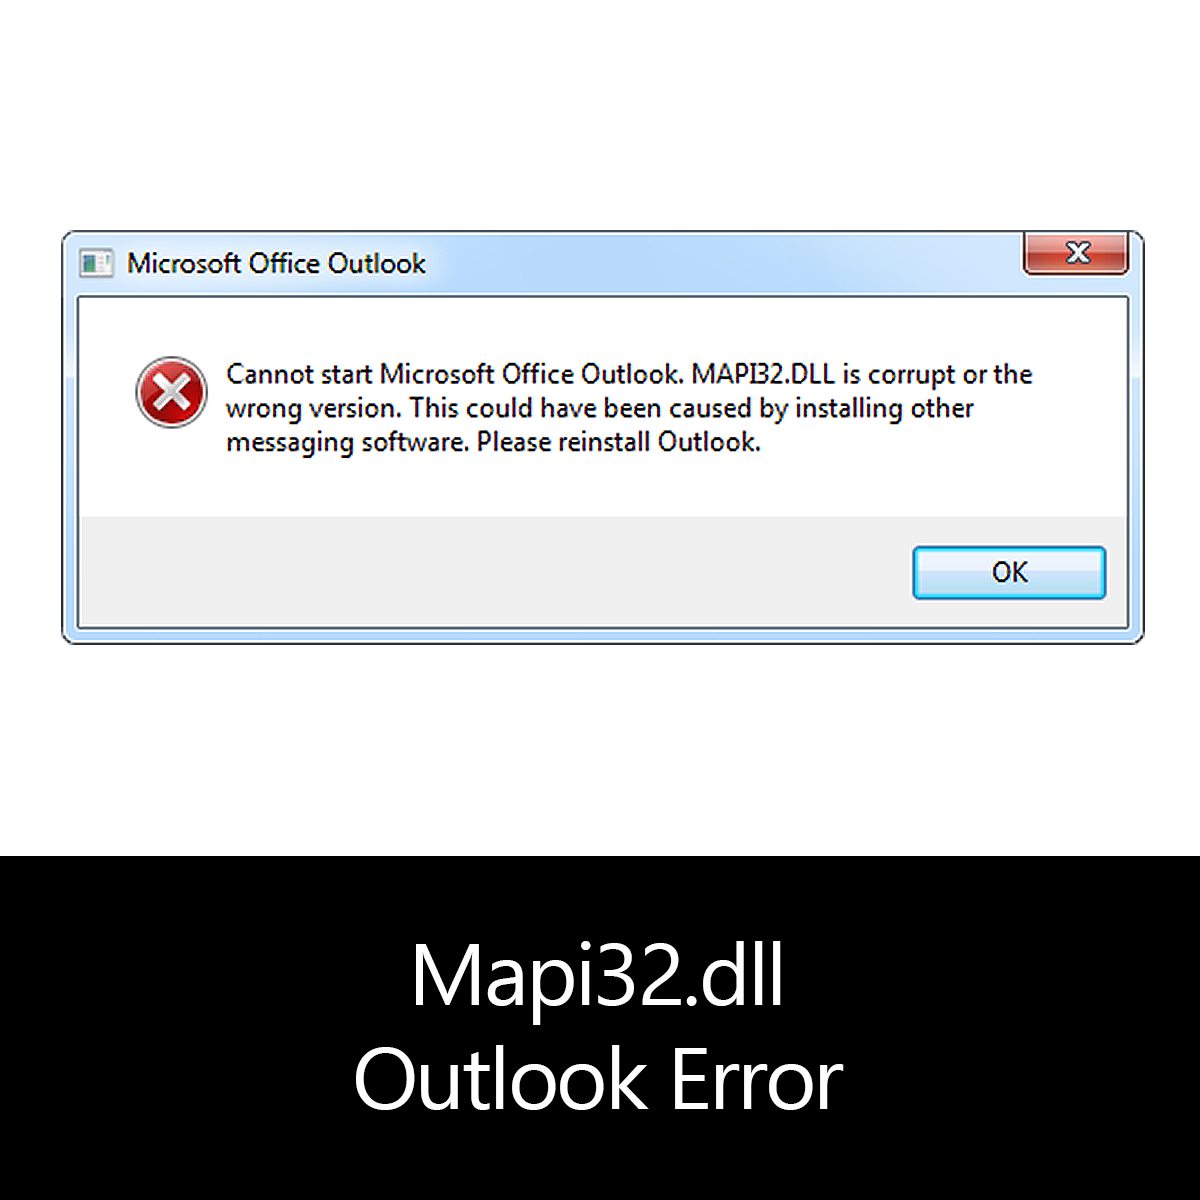 손상된 Outlook mapi32.dll을 열 수 없습니다.